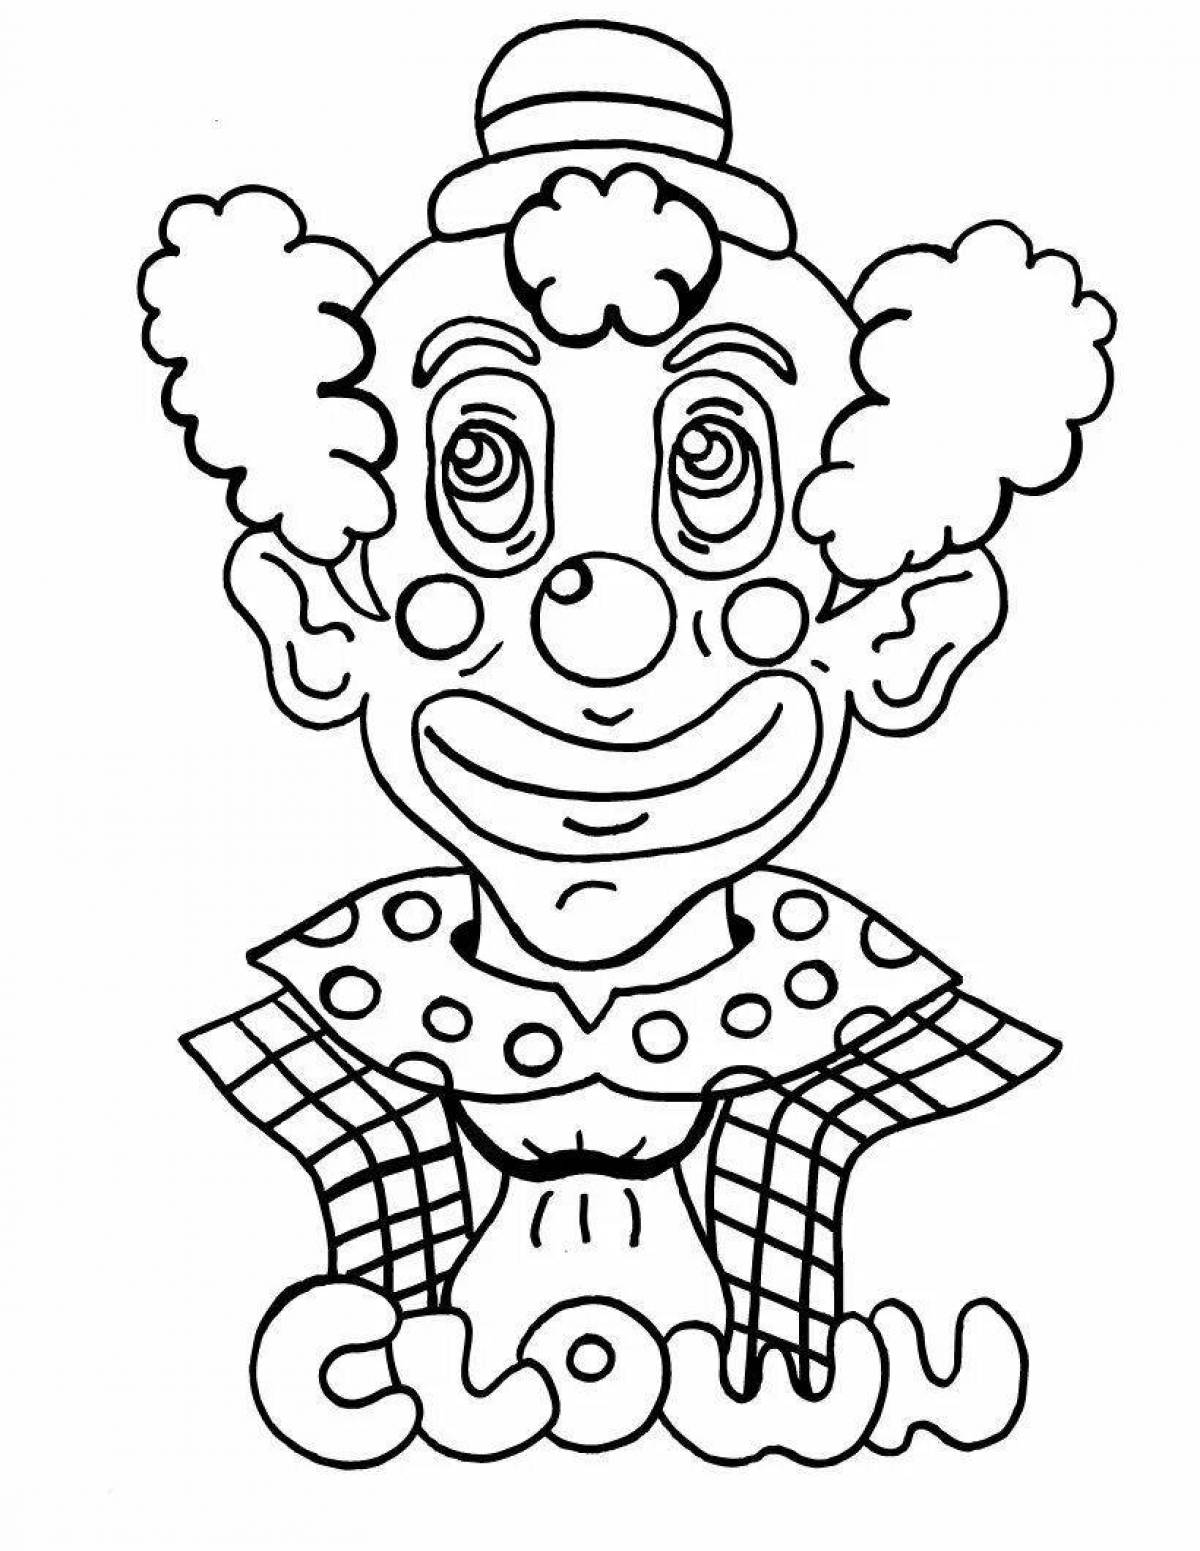 Веселый рисунок клоуна для детей